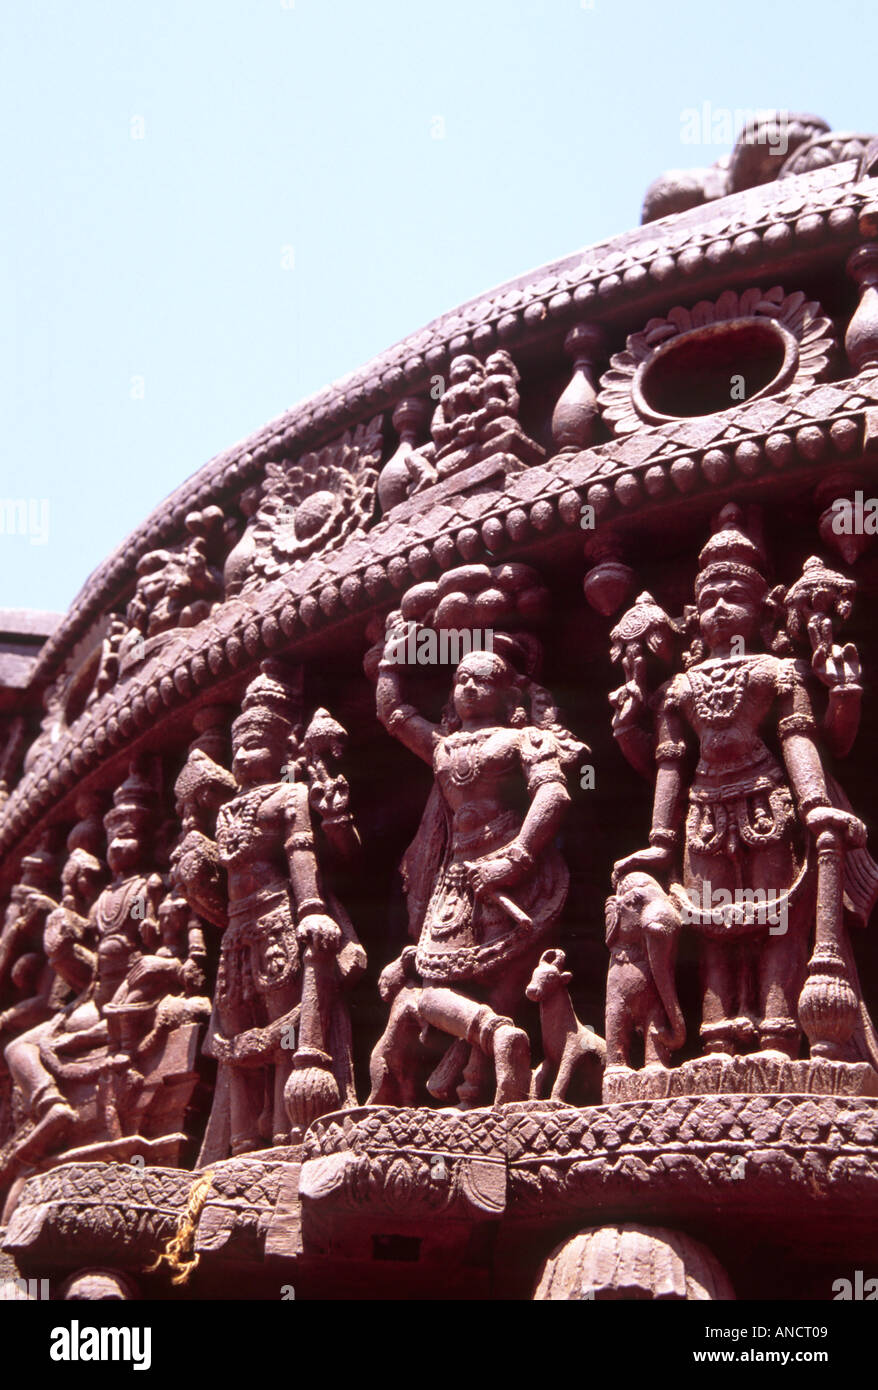 Découpage sur panier décoré, Somnathpur, Mysore, Karnataka, Inde Banque D'Images